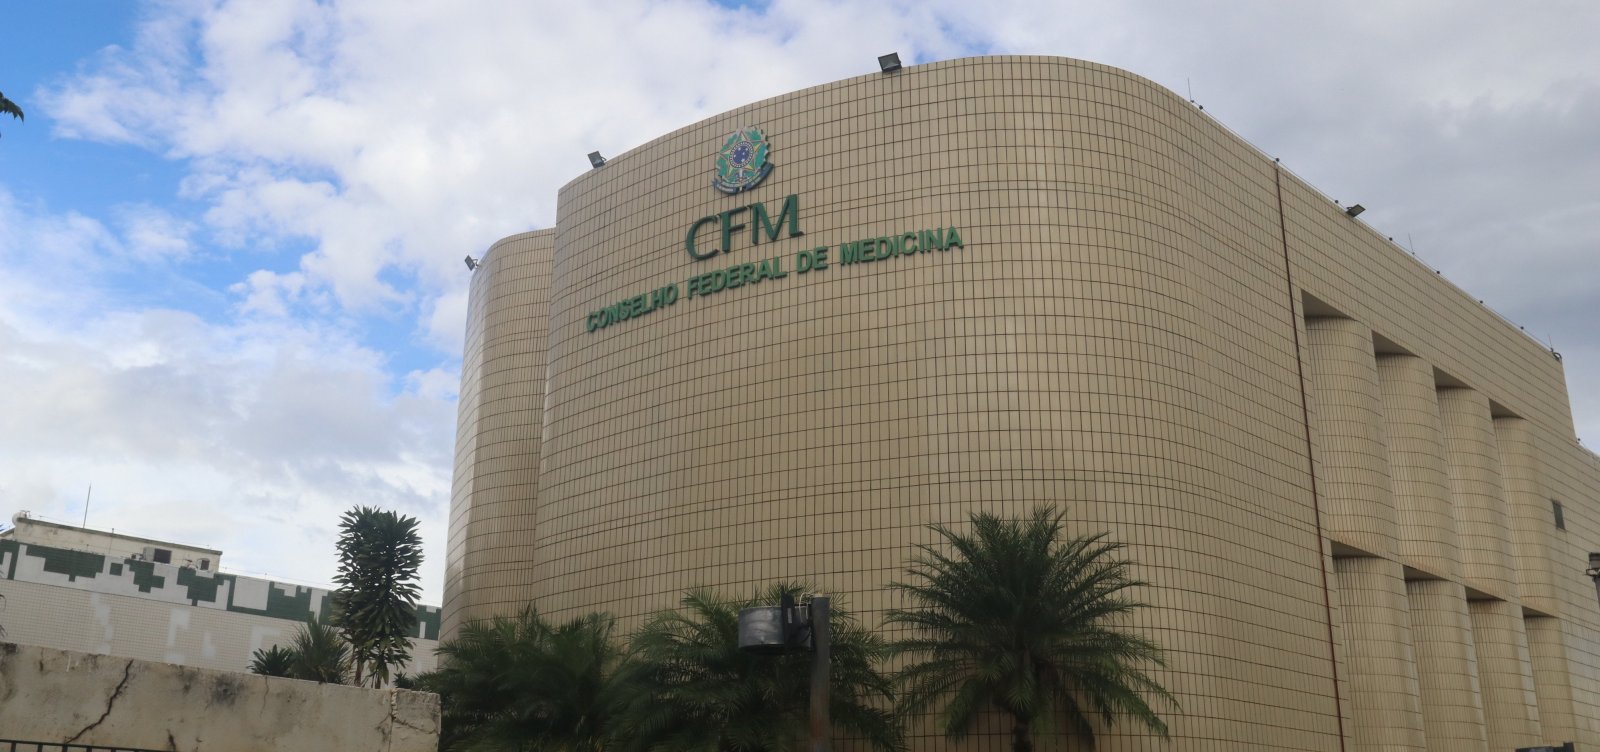 Governo aciona MPF contra decisão do CFM que dificulta concessão de benefícios por incapacidade temporária